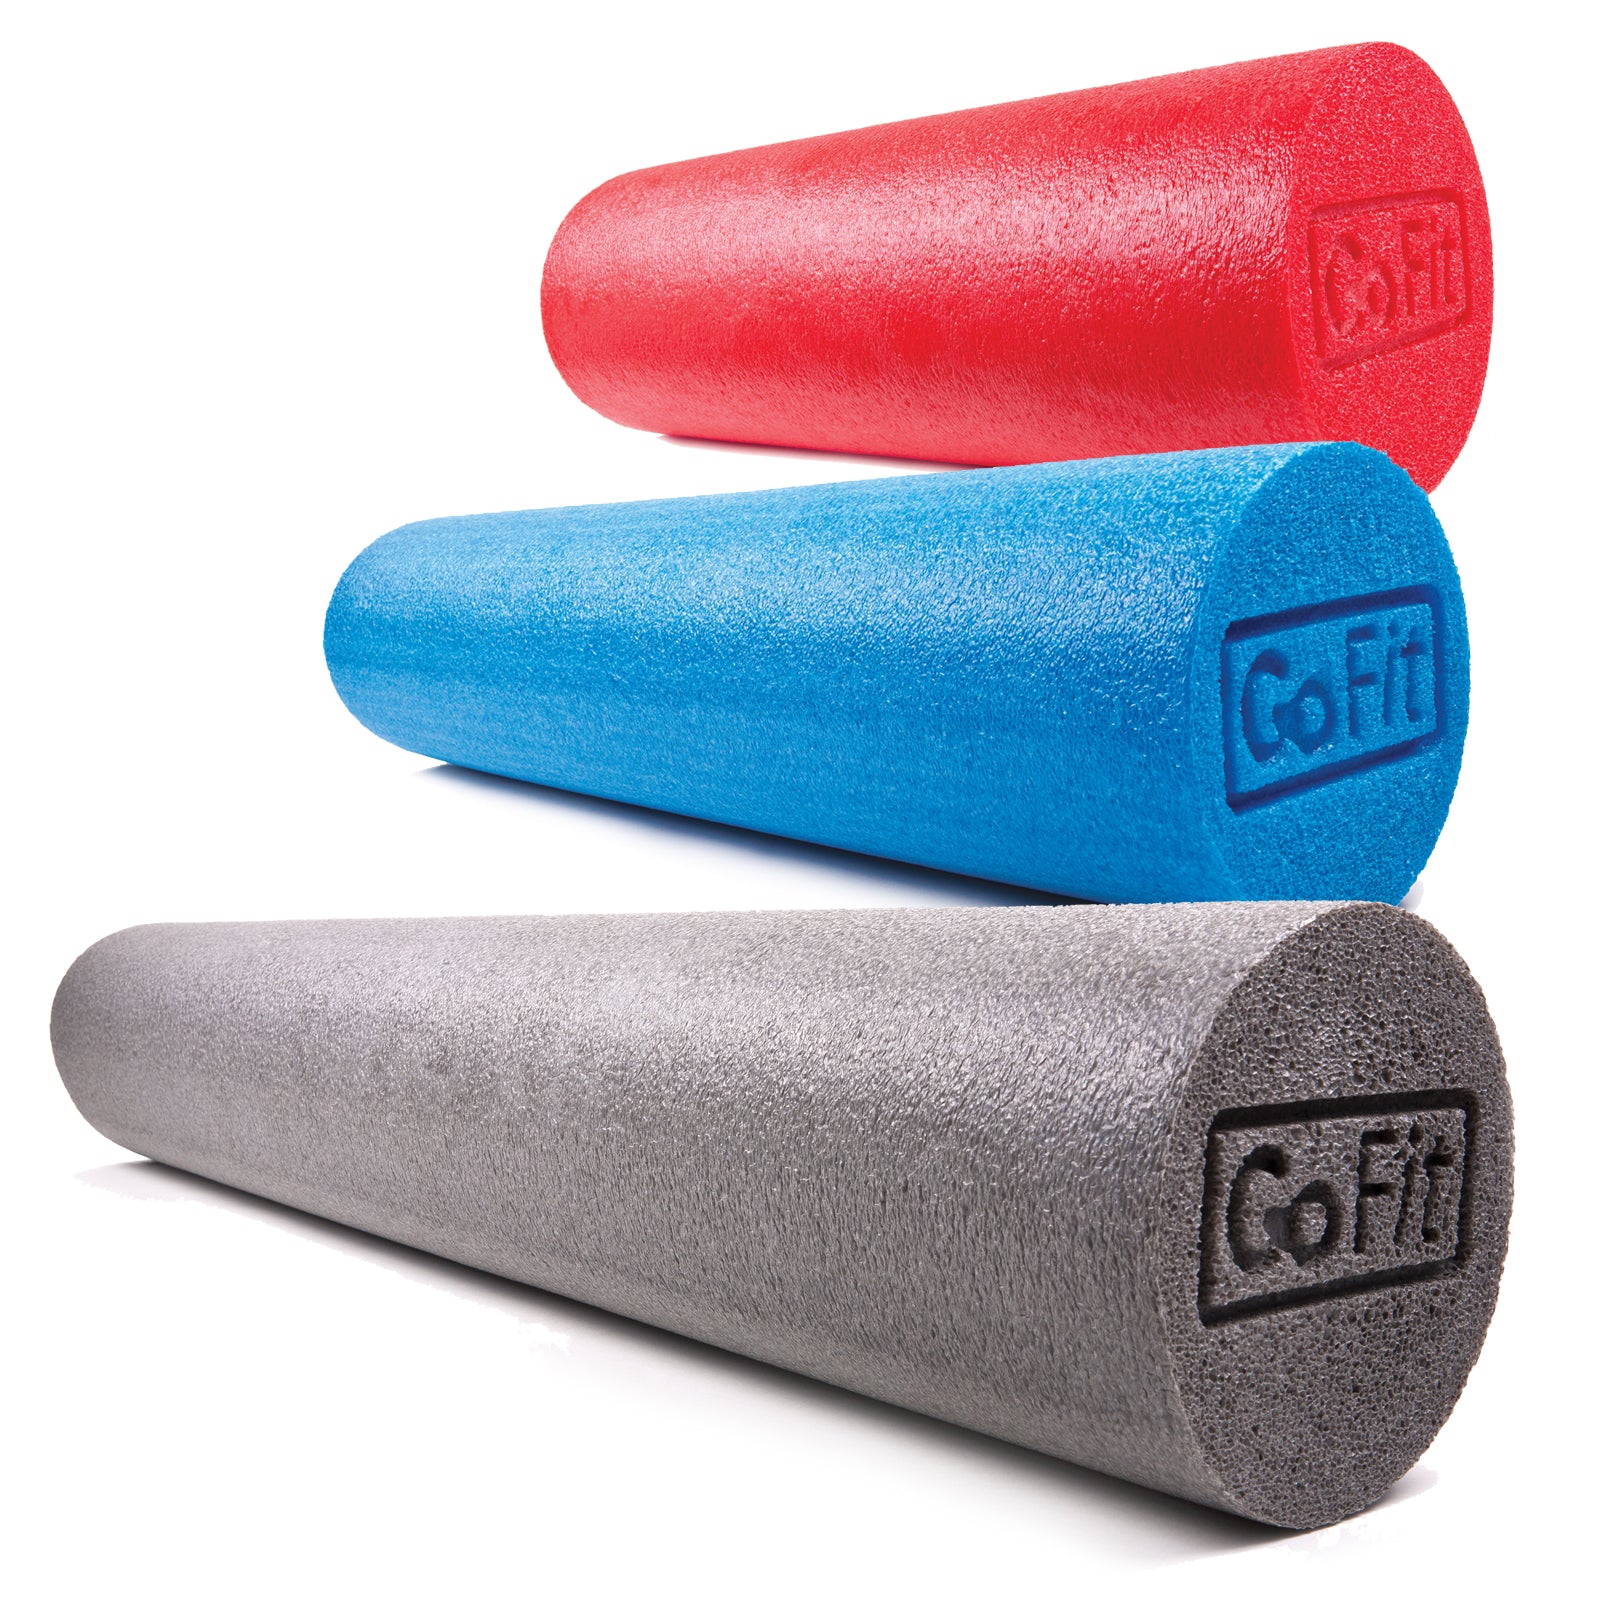 Roll mousse (foam roller) 15 x 90 cm